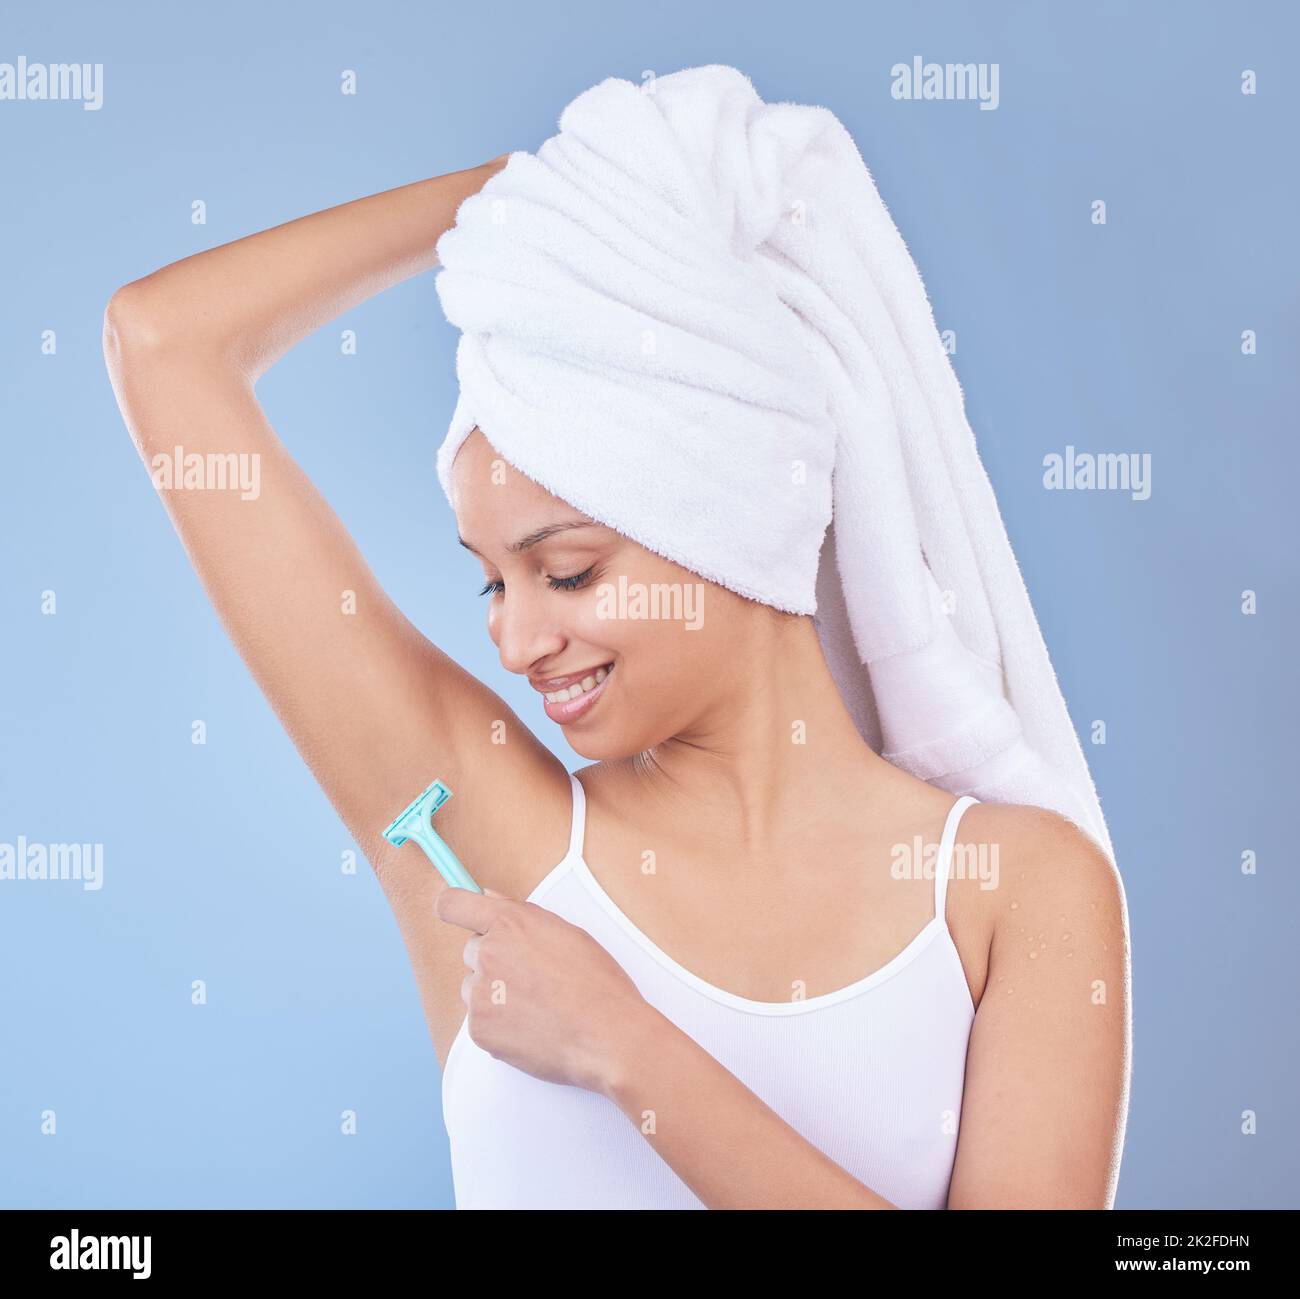 Glatt und frisch. Aufnahme einer jungen Frau, die ihre Achselhöhlen mit einem Einwegrasierer rasieren ließ. Stockfoto